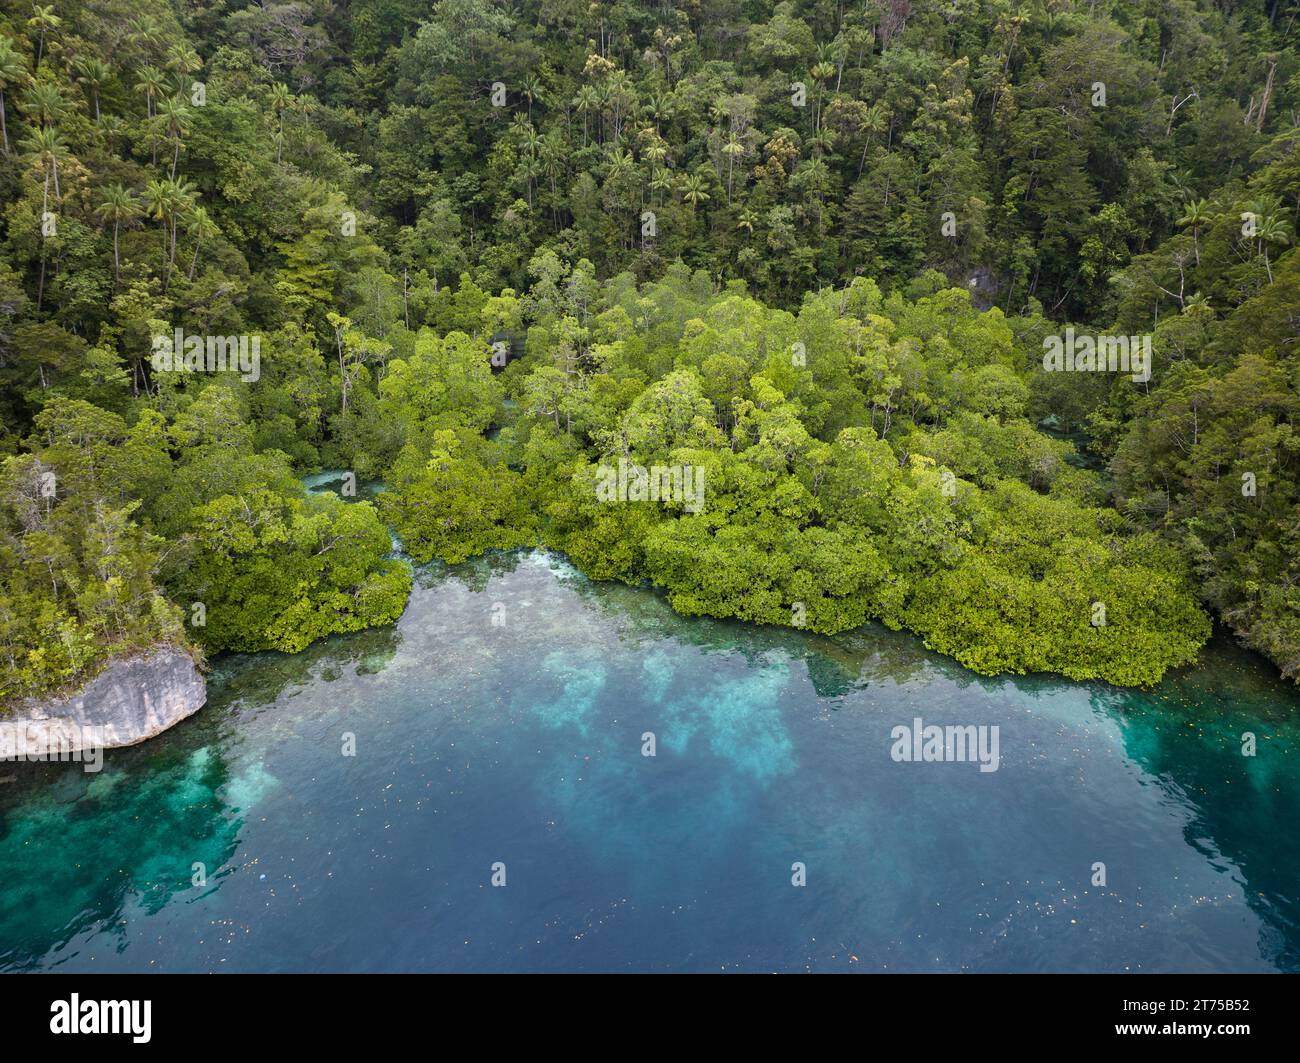 Una foresta di mangrovie è annidata in un'alcova calcarea a Raja Ampat, Indonesia. Le mangrovie offrono un habitat vitale per molte specie di pesci e invertebrati. Foto Stock